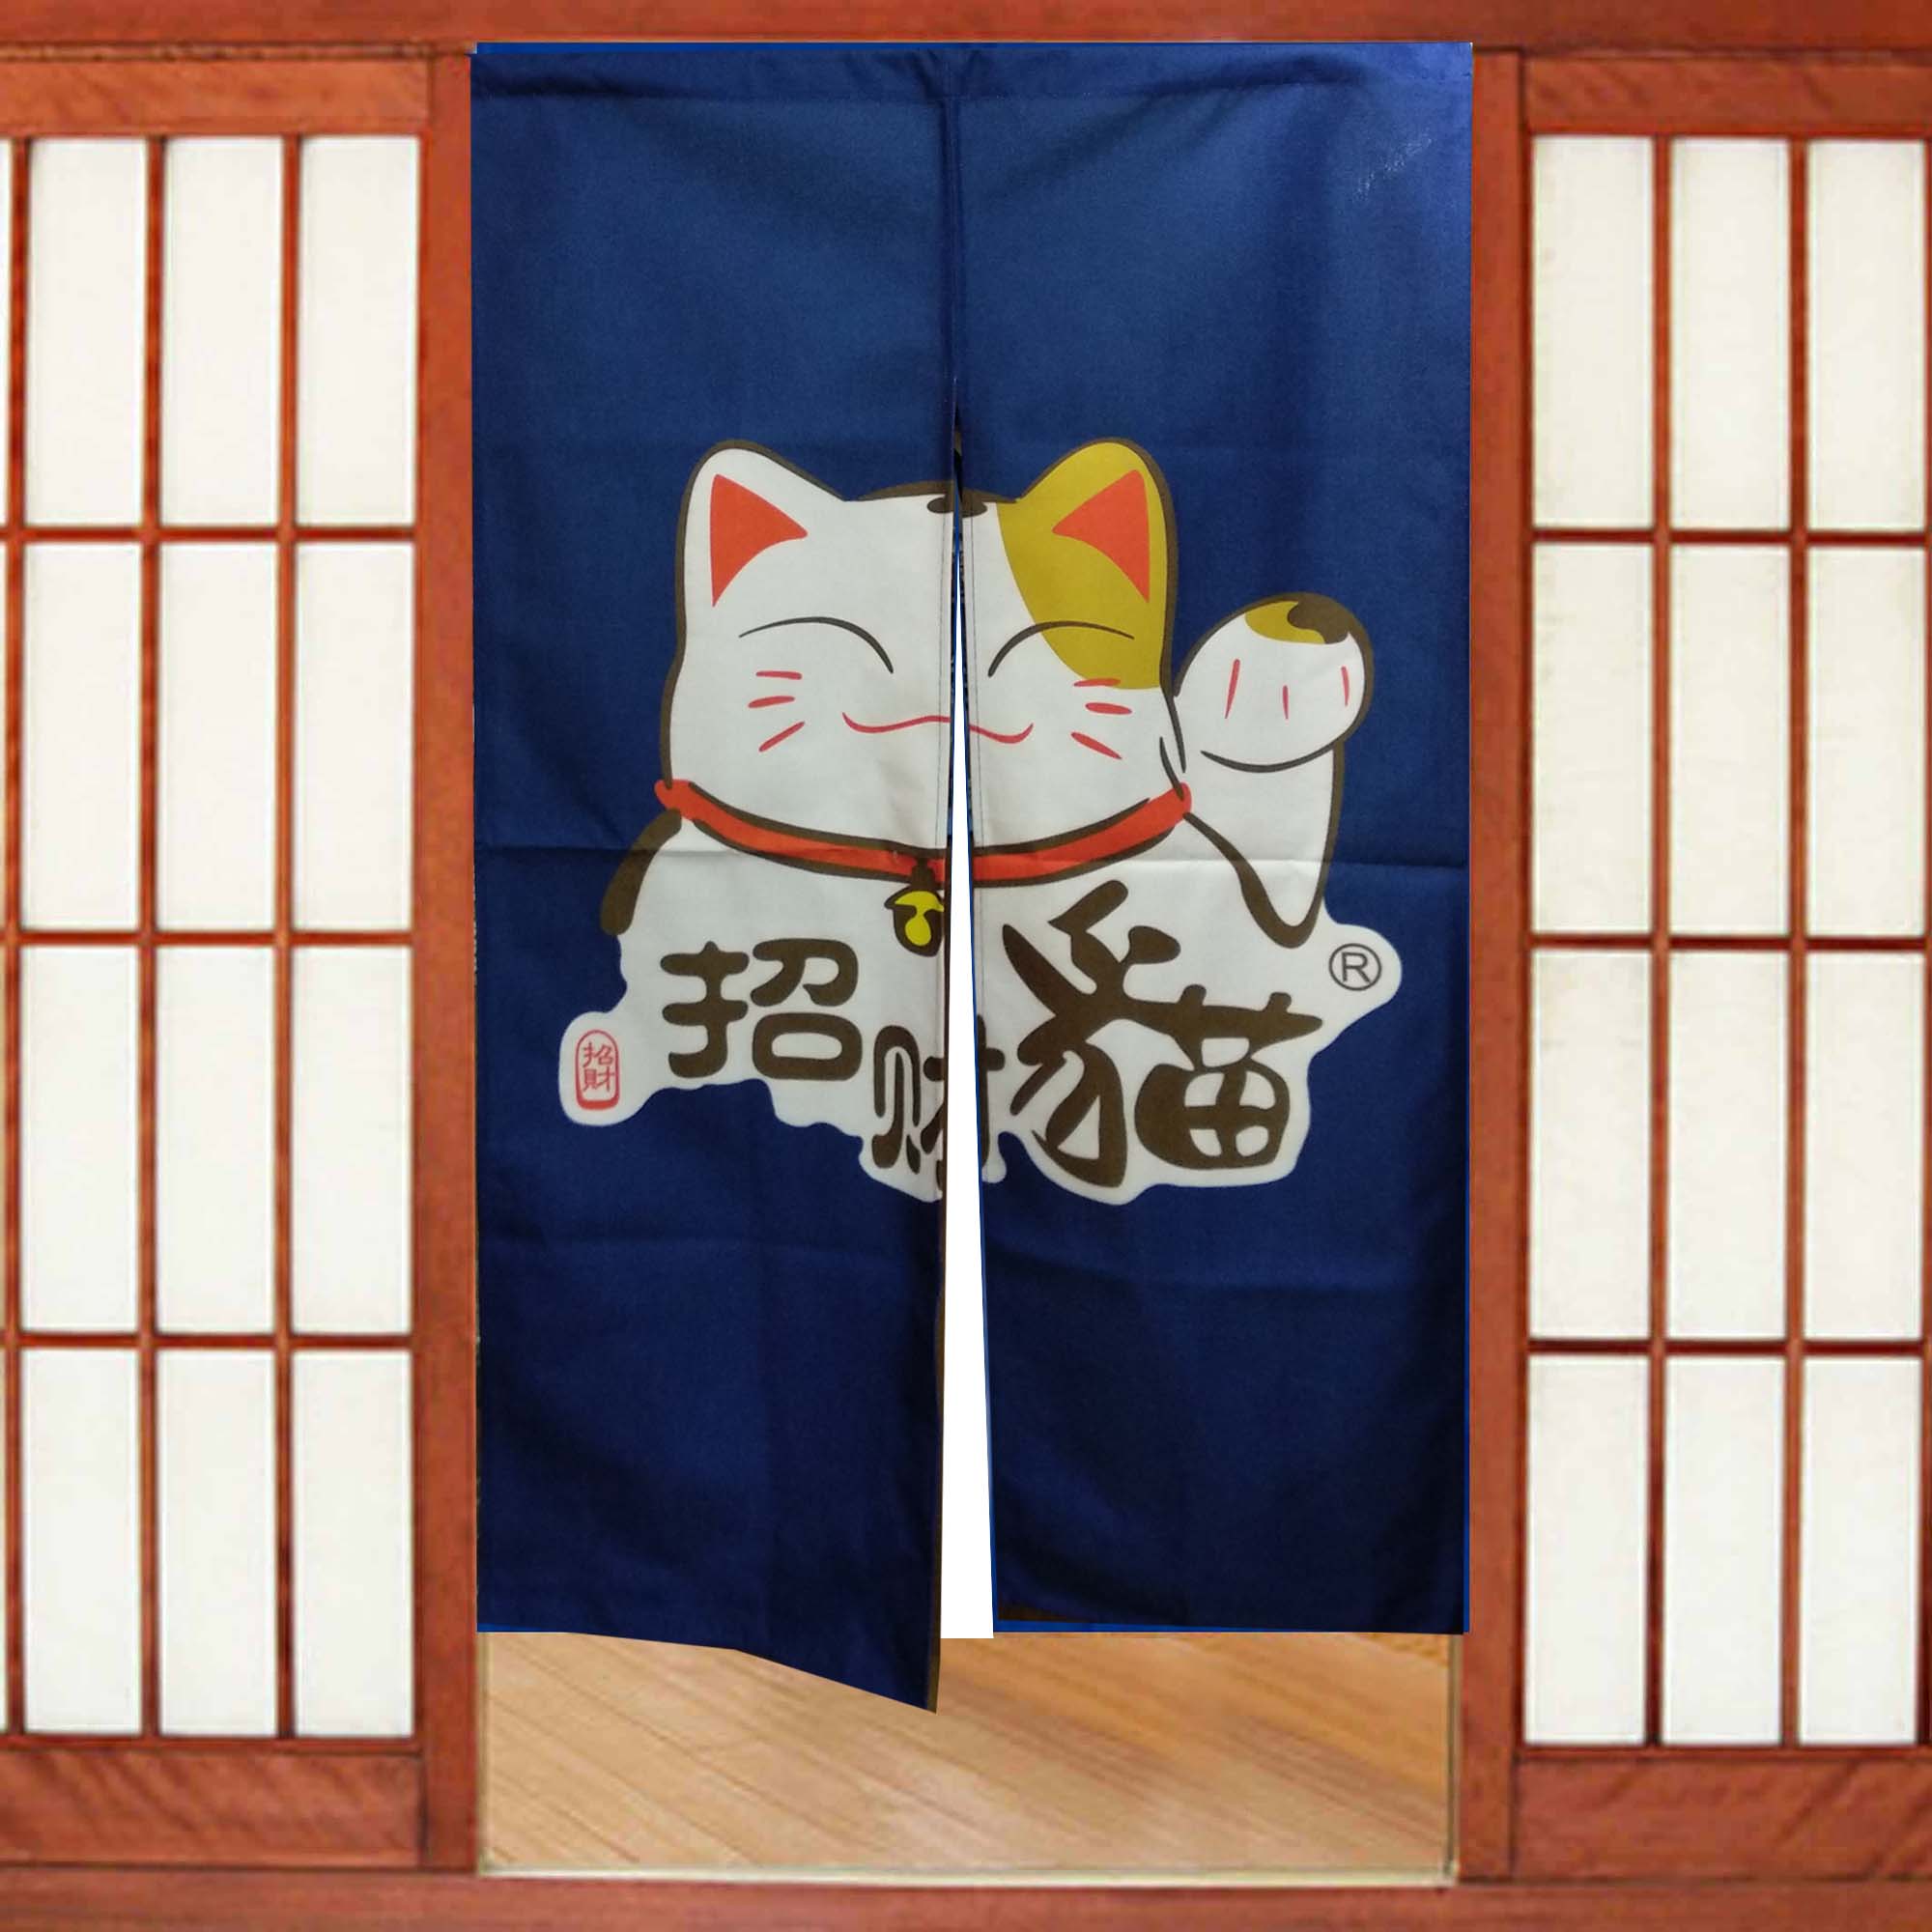 Sự thật thú vị về rèm cửa quán ăn Nhật bạn không thể bỏ qua rèm cửa quán ăn Nhật remnoren 1